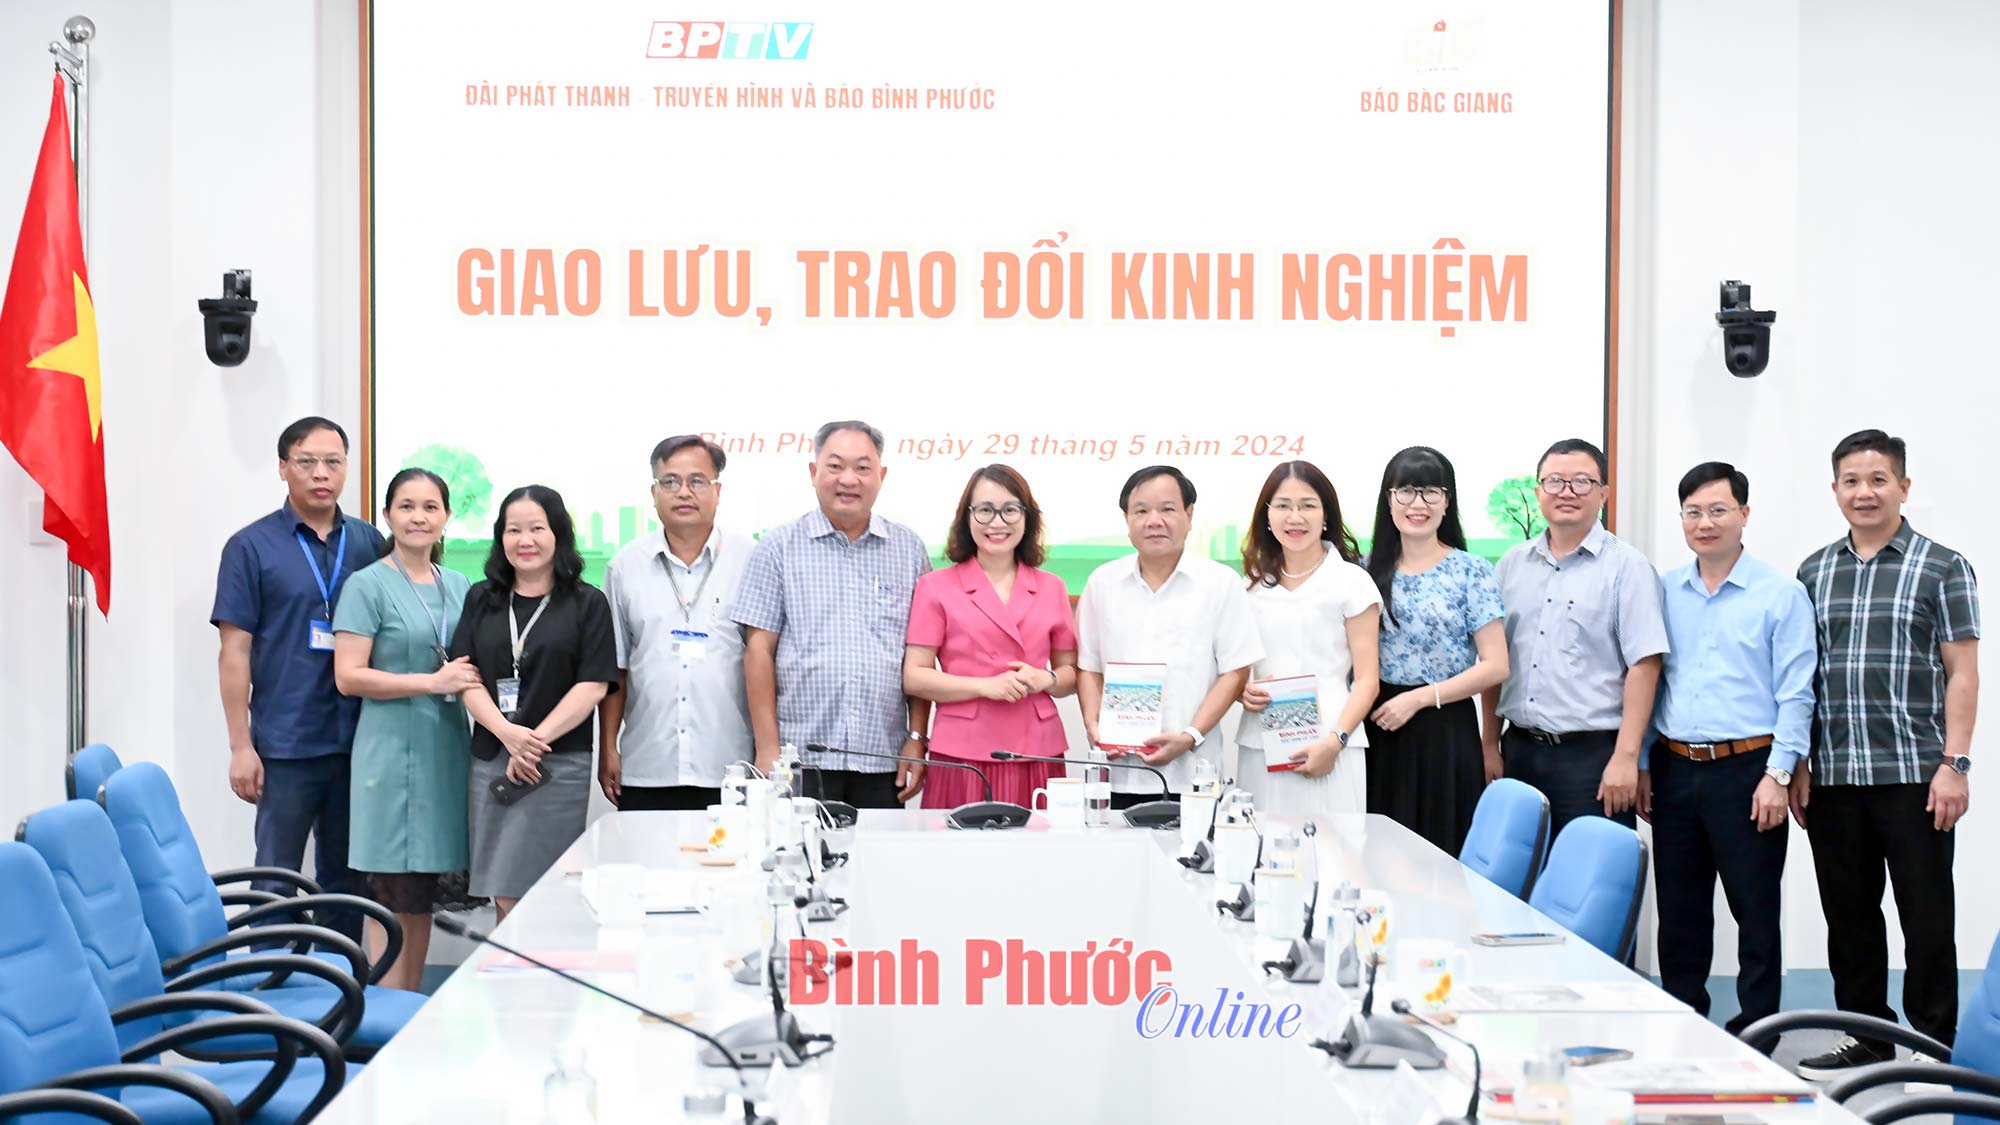 Báo Bắc Giang và BPTV giao lưu, trao đổi kinh nghiệm